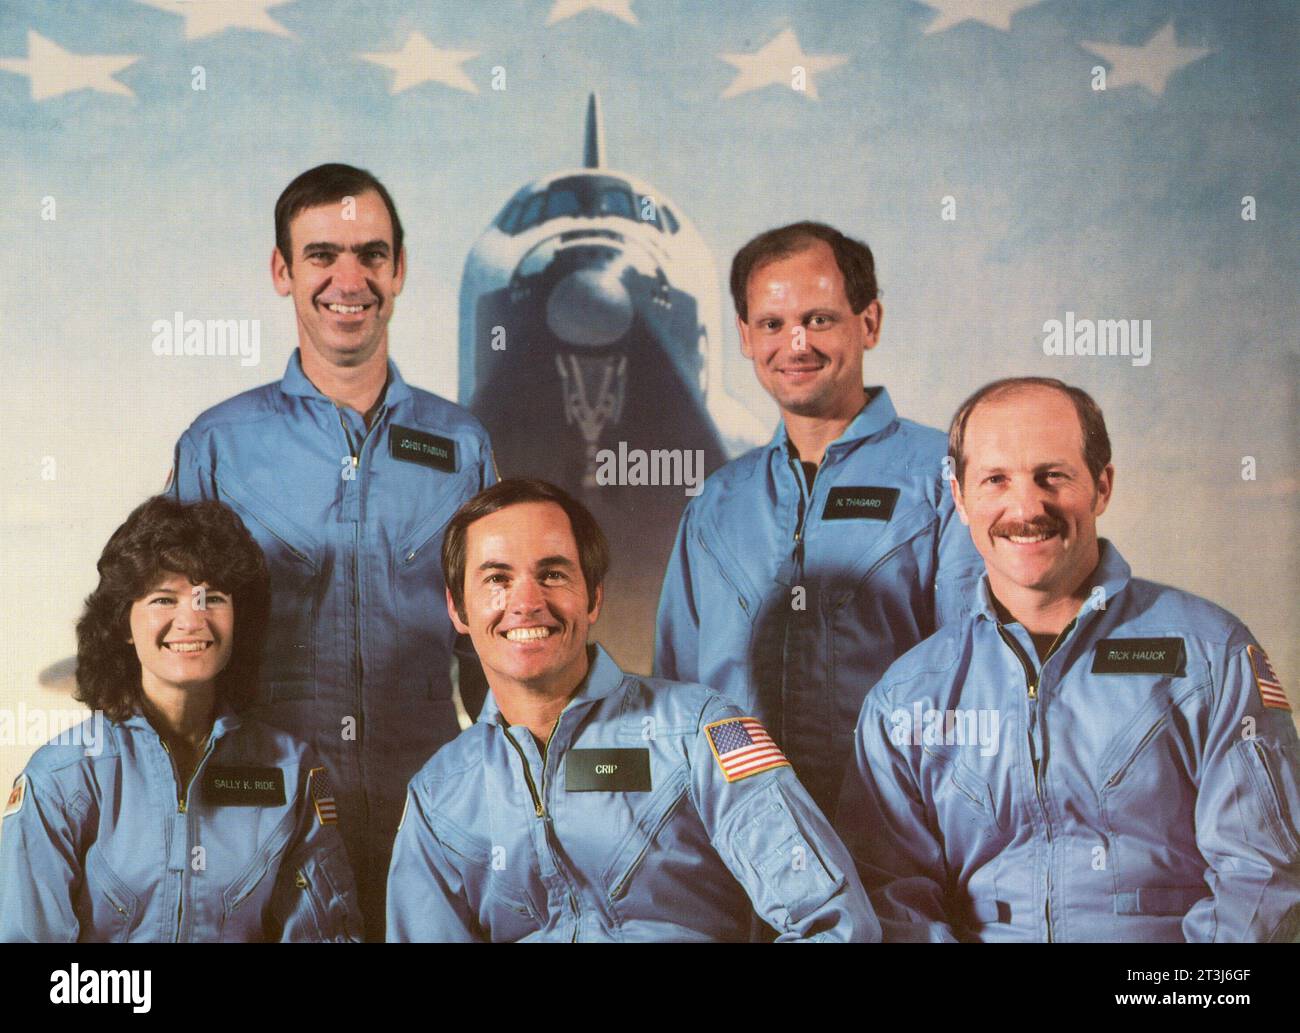 Les astronautes de la mission STS-7/Challenger sont de gauche à droite au premier rang : Sally K. Ride (spécialiste de la mission), Robert L. Crippen (commandant), Frederick H. Hauck (pilote) ; à l'arrière, John M. Fabian (à gauche) et Norman E. Thagard (spécialistes de la mission). STS-7 a lancé le premier équipage de cinq membres et la première astronaute américaine dans l'espace le 18 juin 1983. Astronautes STS-7, 1983 astronautes de la mission STS-7/Challenger sont de gauche à droite en première rangée : Sally K. Ride (spécialiste de mission), Robert L. Crippen (commandant), Frederick H. Hauck (pilote) ; rangée arrière : John M. Fabian (gauche) et Norman E. Thagard Banque D'Images